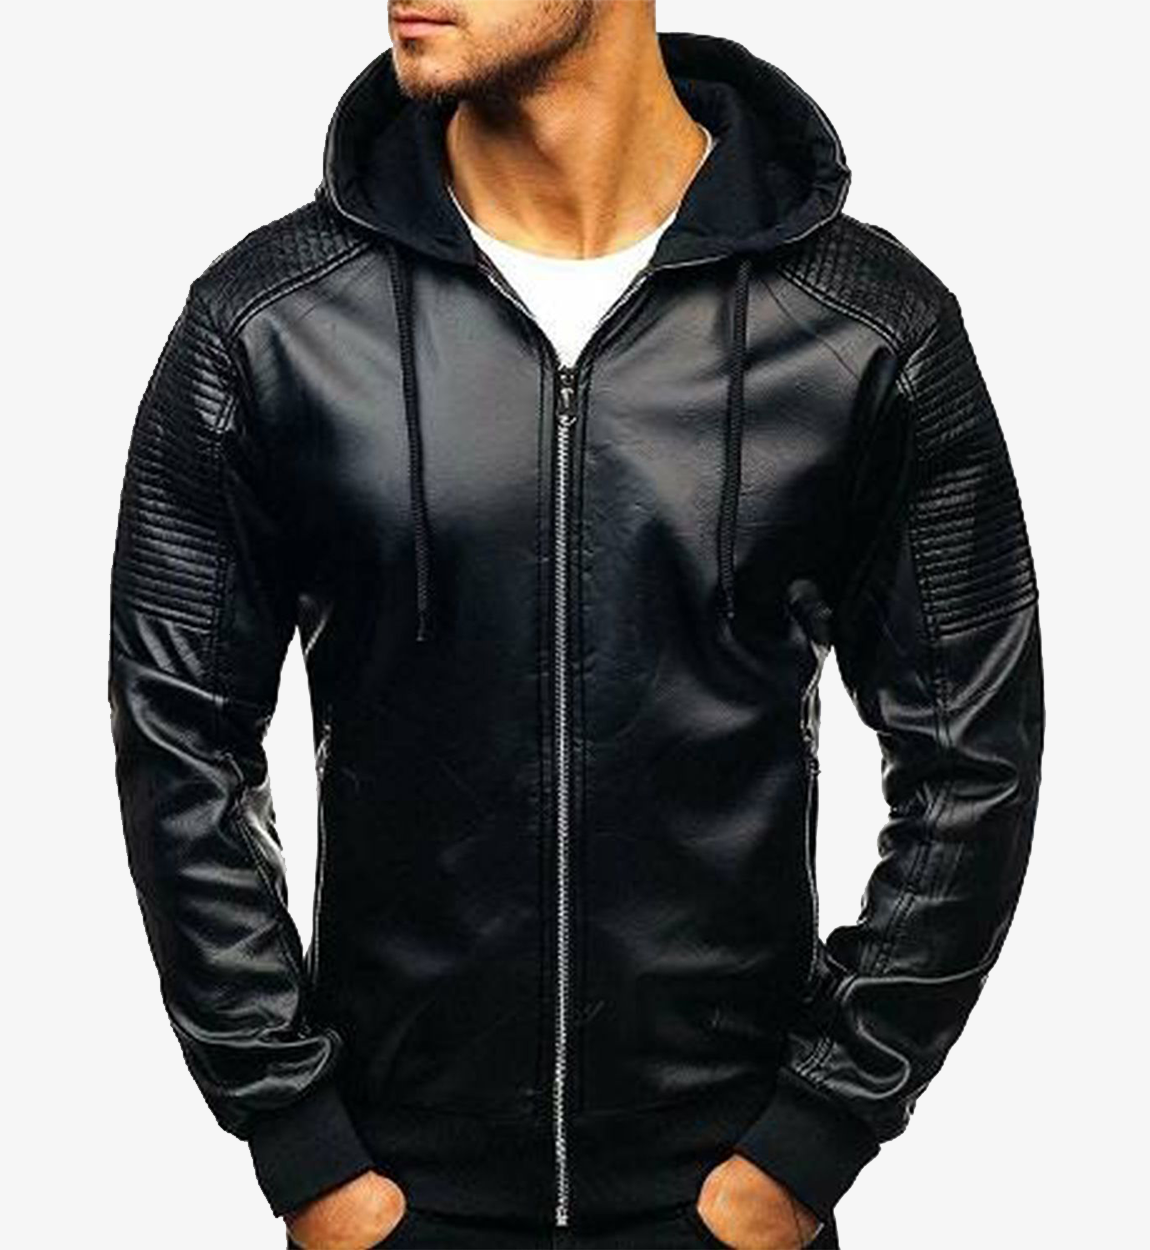 Men's Black Hooded Cafe Racer Leather Jacket